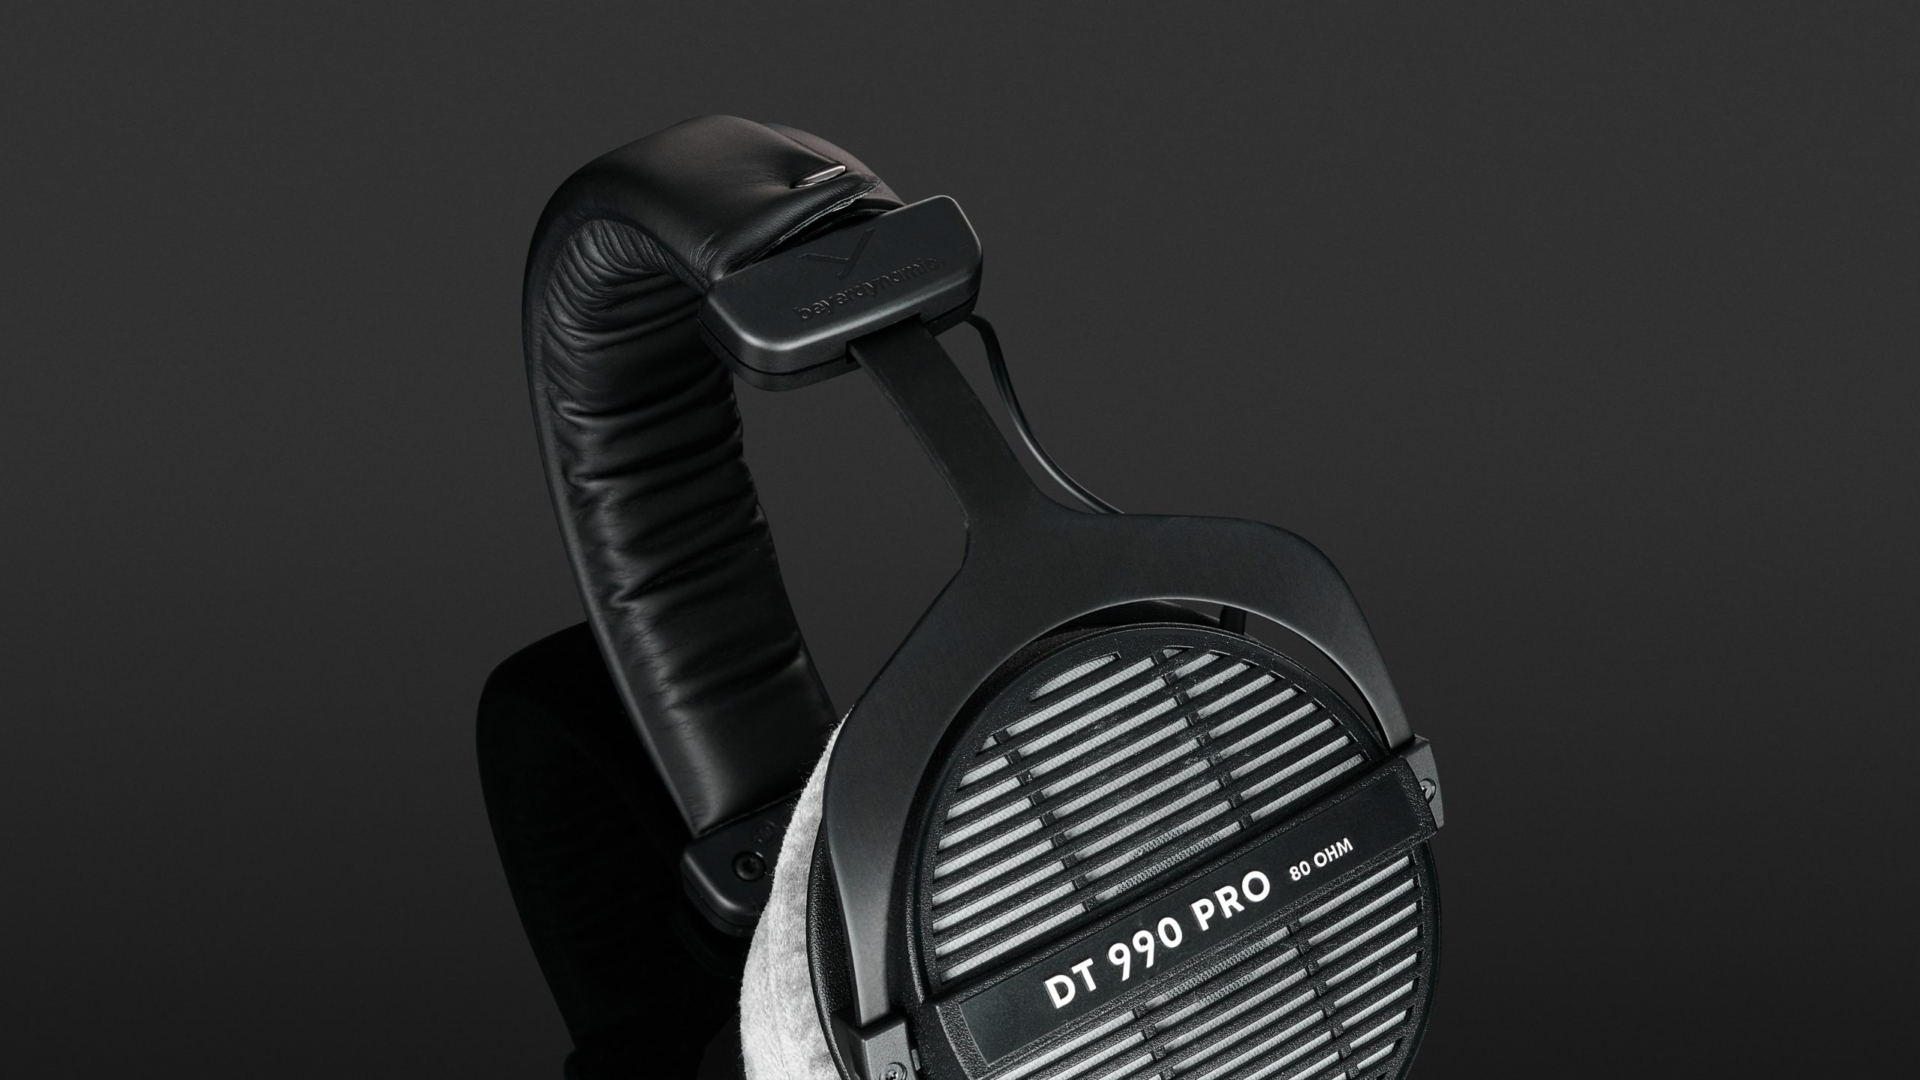 Beyerdynamic DT 990 Pro 80 Ohm Review